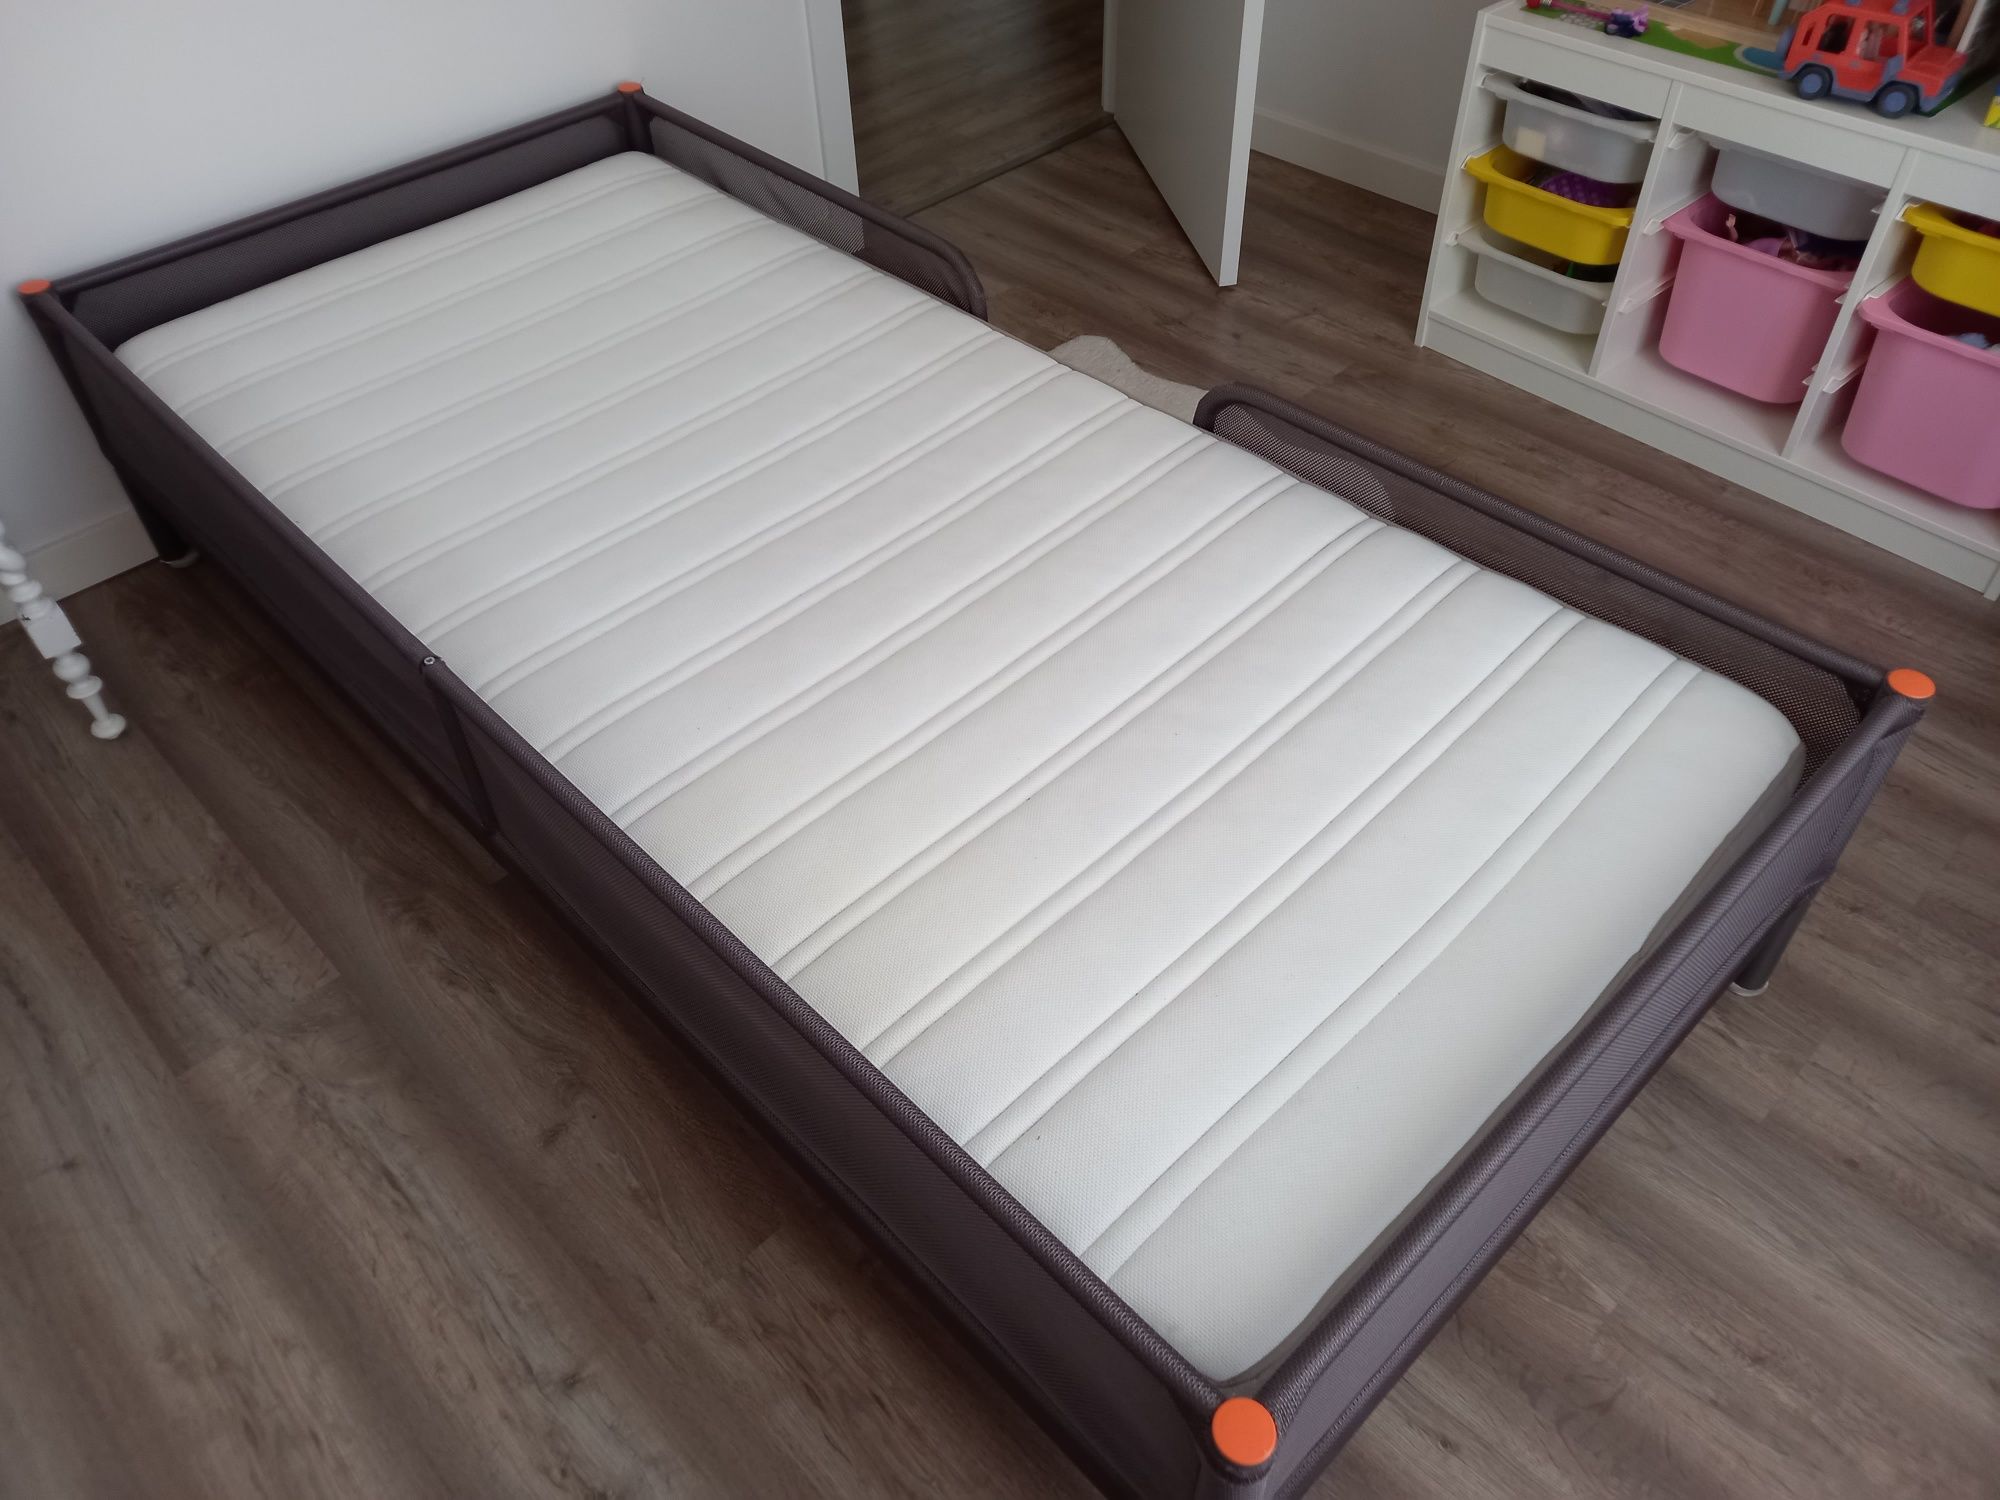 Vendo cama metálica 0,90m x 2m com colchão